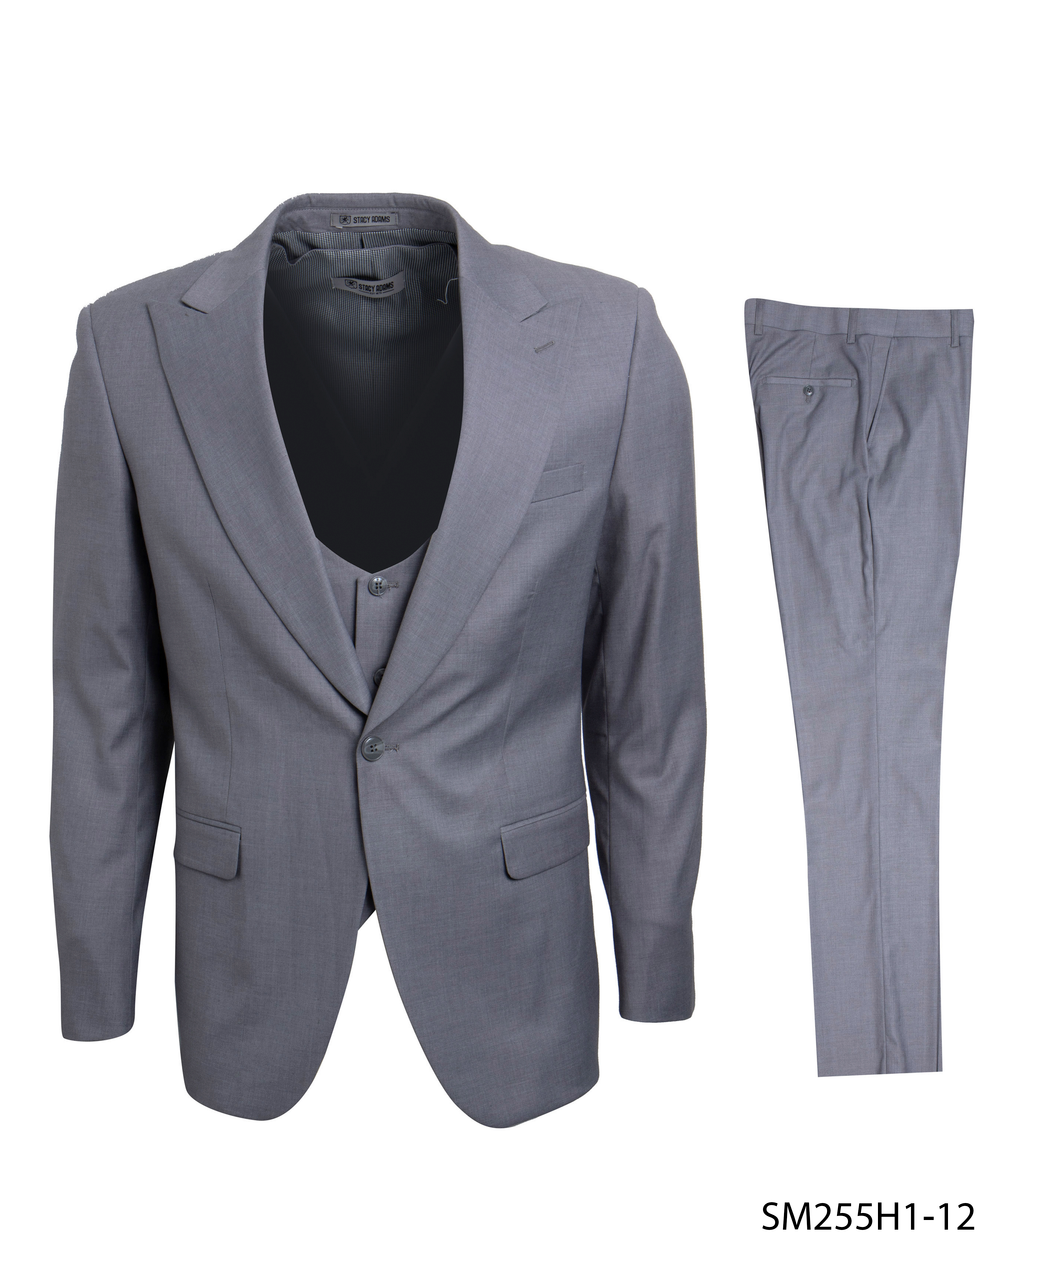 Stacy Adams Fashion Suit 3 Piece Light Gray Peak Lapel Low Cut Vest SM255H